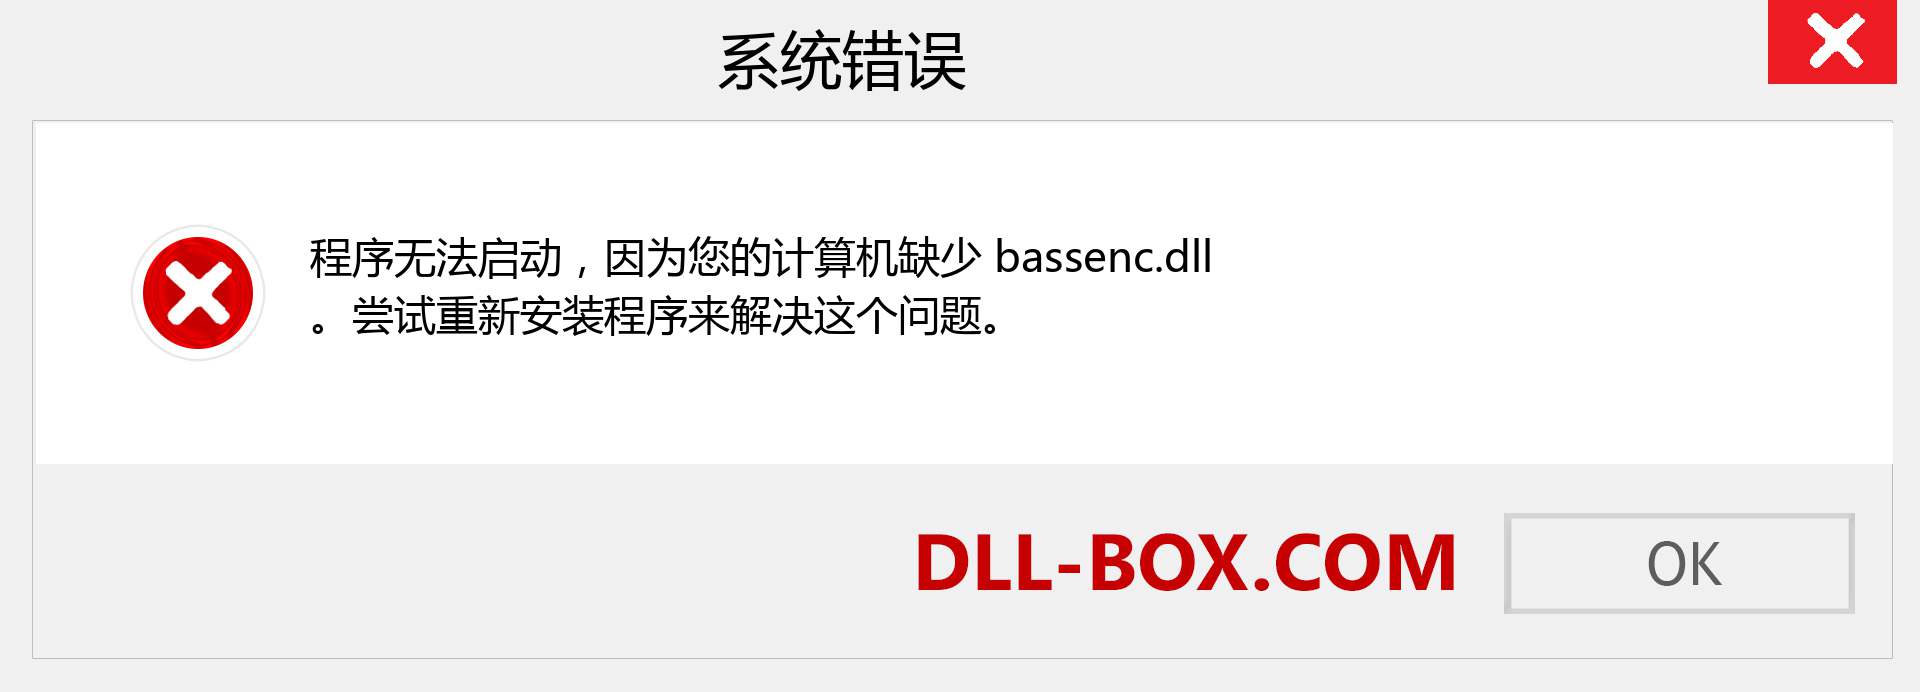 bassenc.dll 文件丢失？。 适用于 Windows 7、8、10 的下载 - 修复 Windows、照片、图像上的 bassenc dll 丢失错误